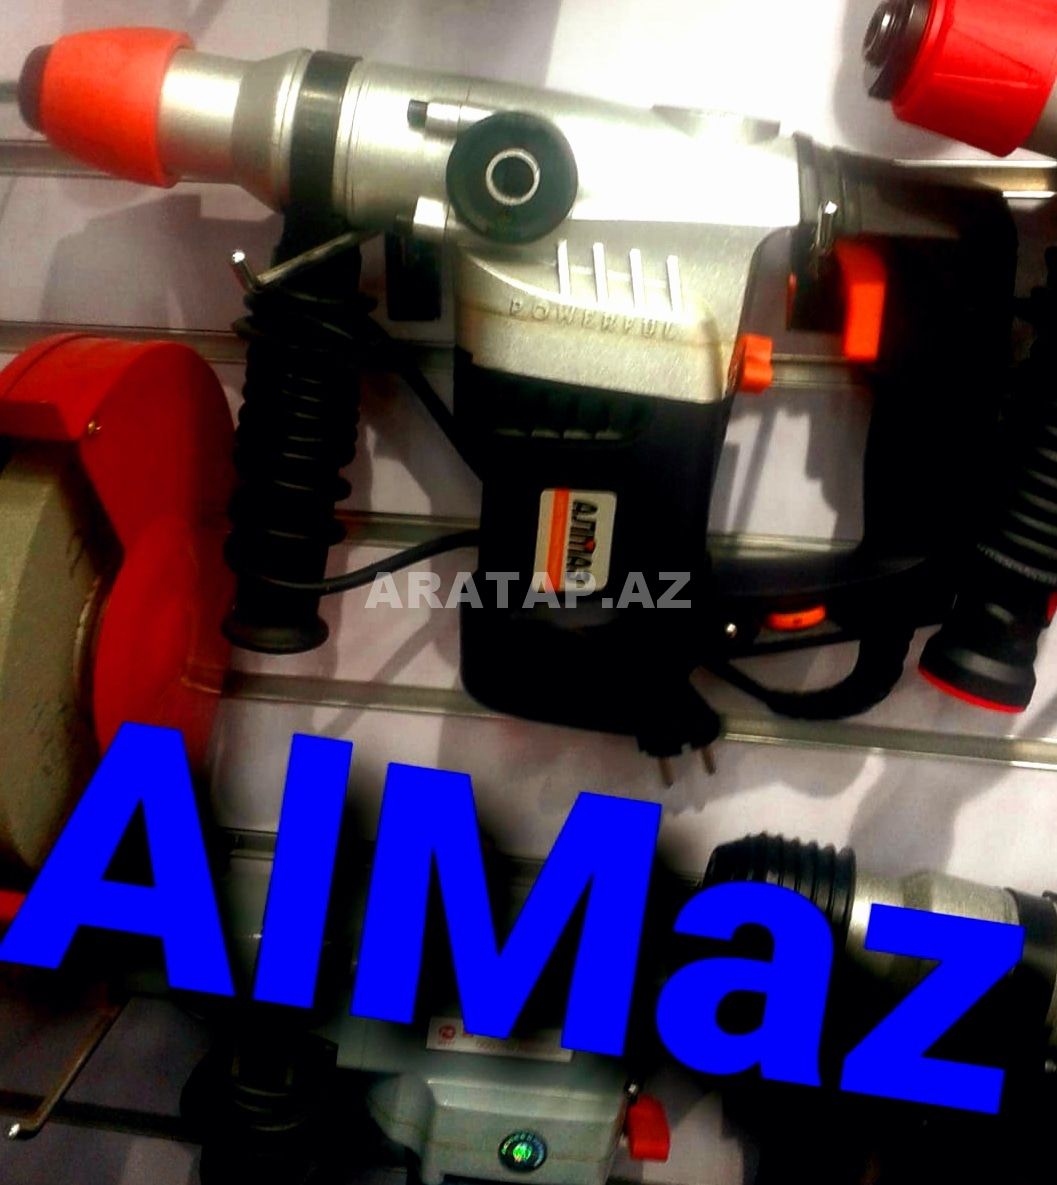 Perfarator Almaz 1800  watt